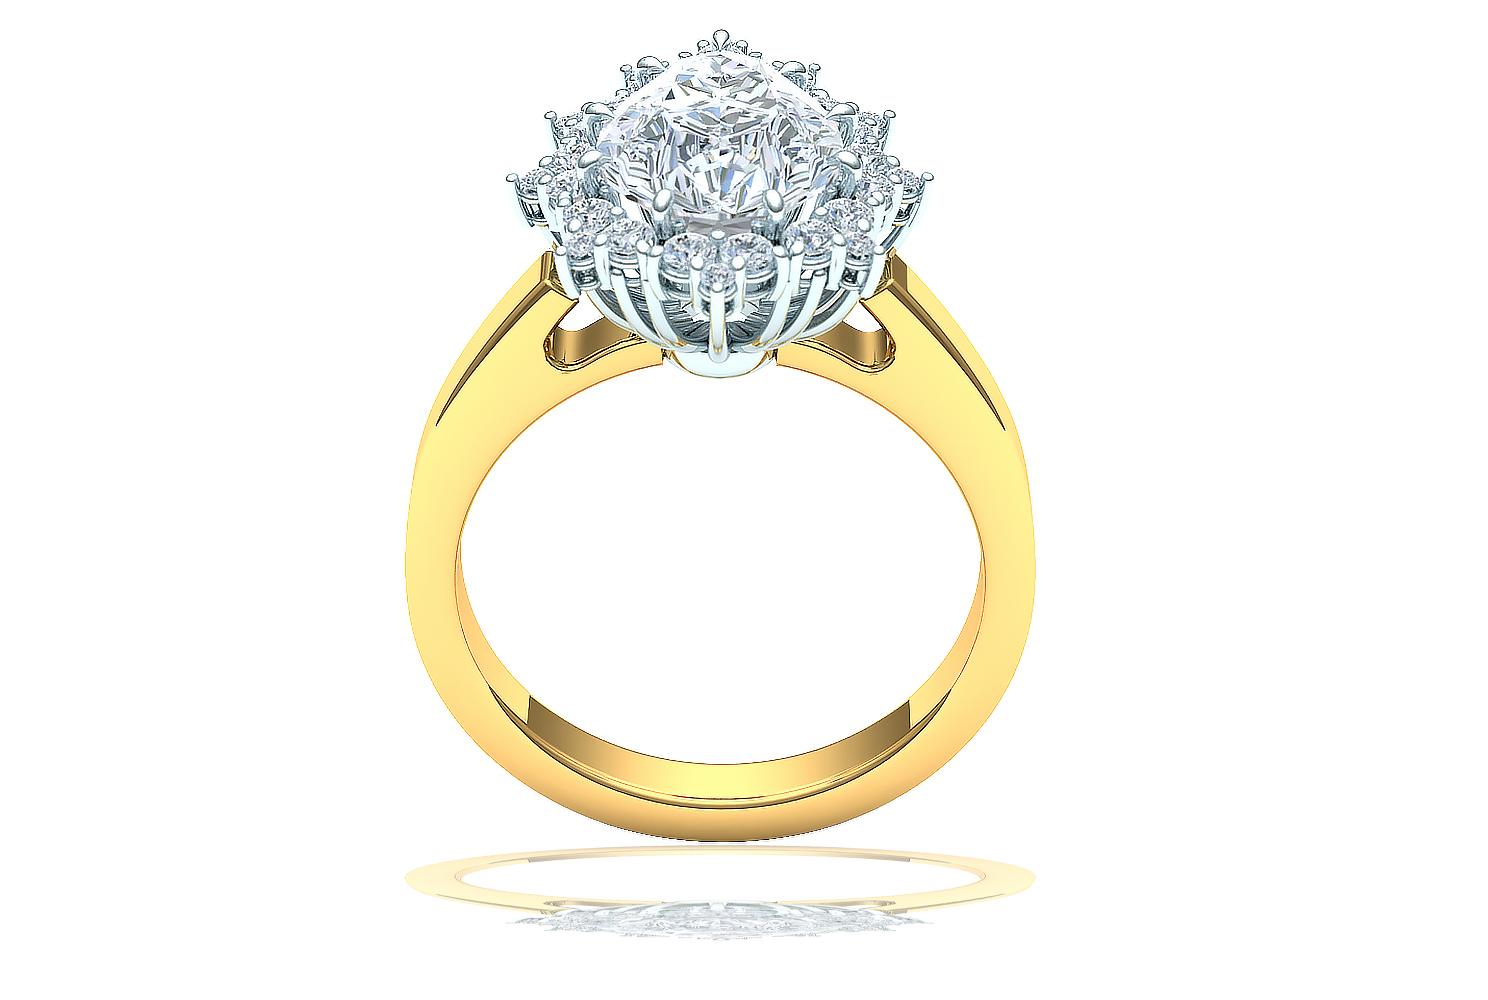 1.5 carat round diamond ring with halo